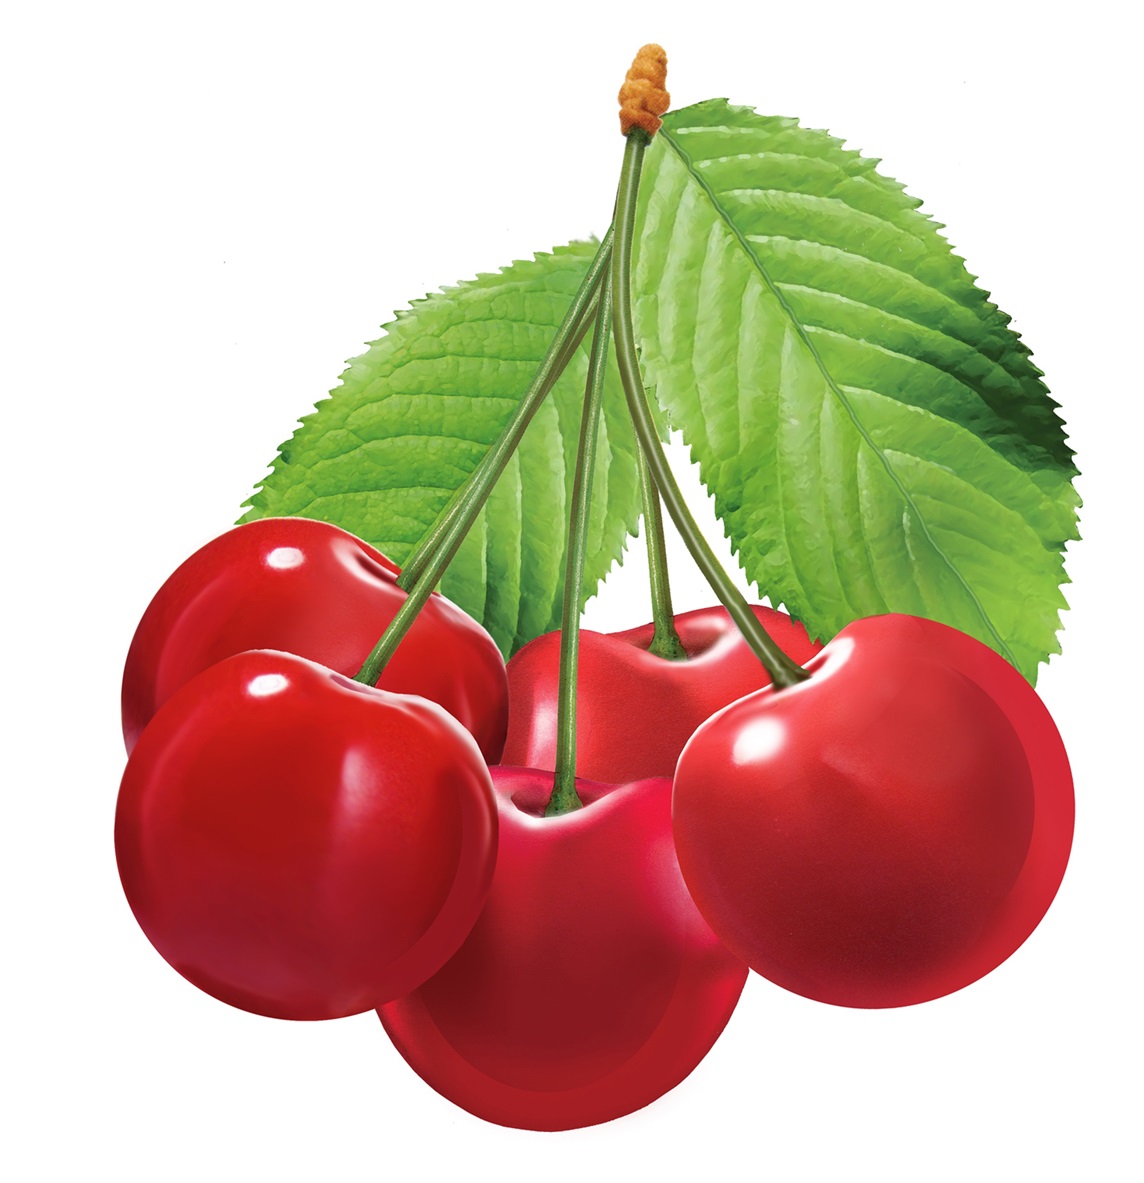 Bunch of cherries Stock Images